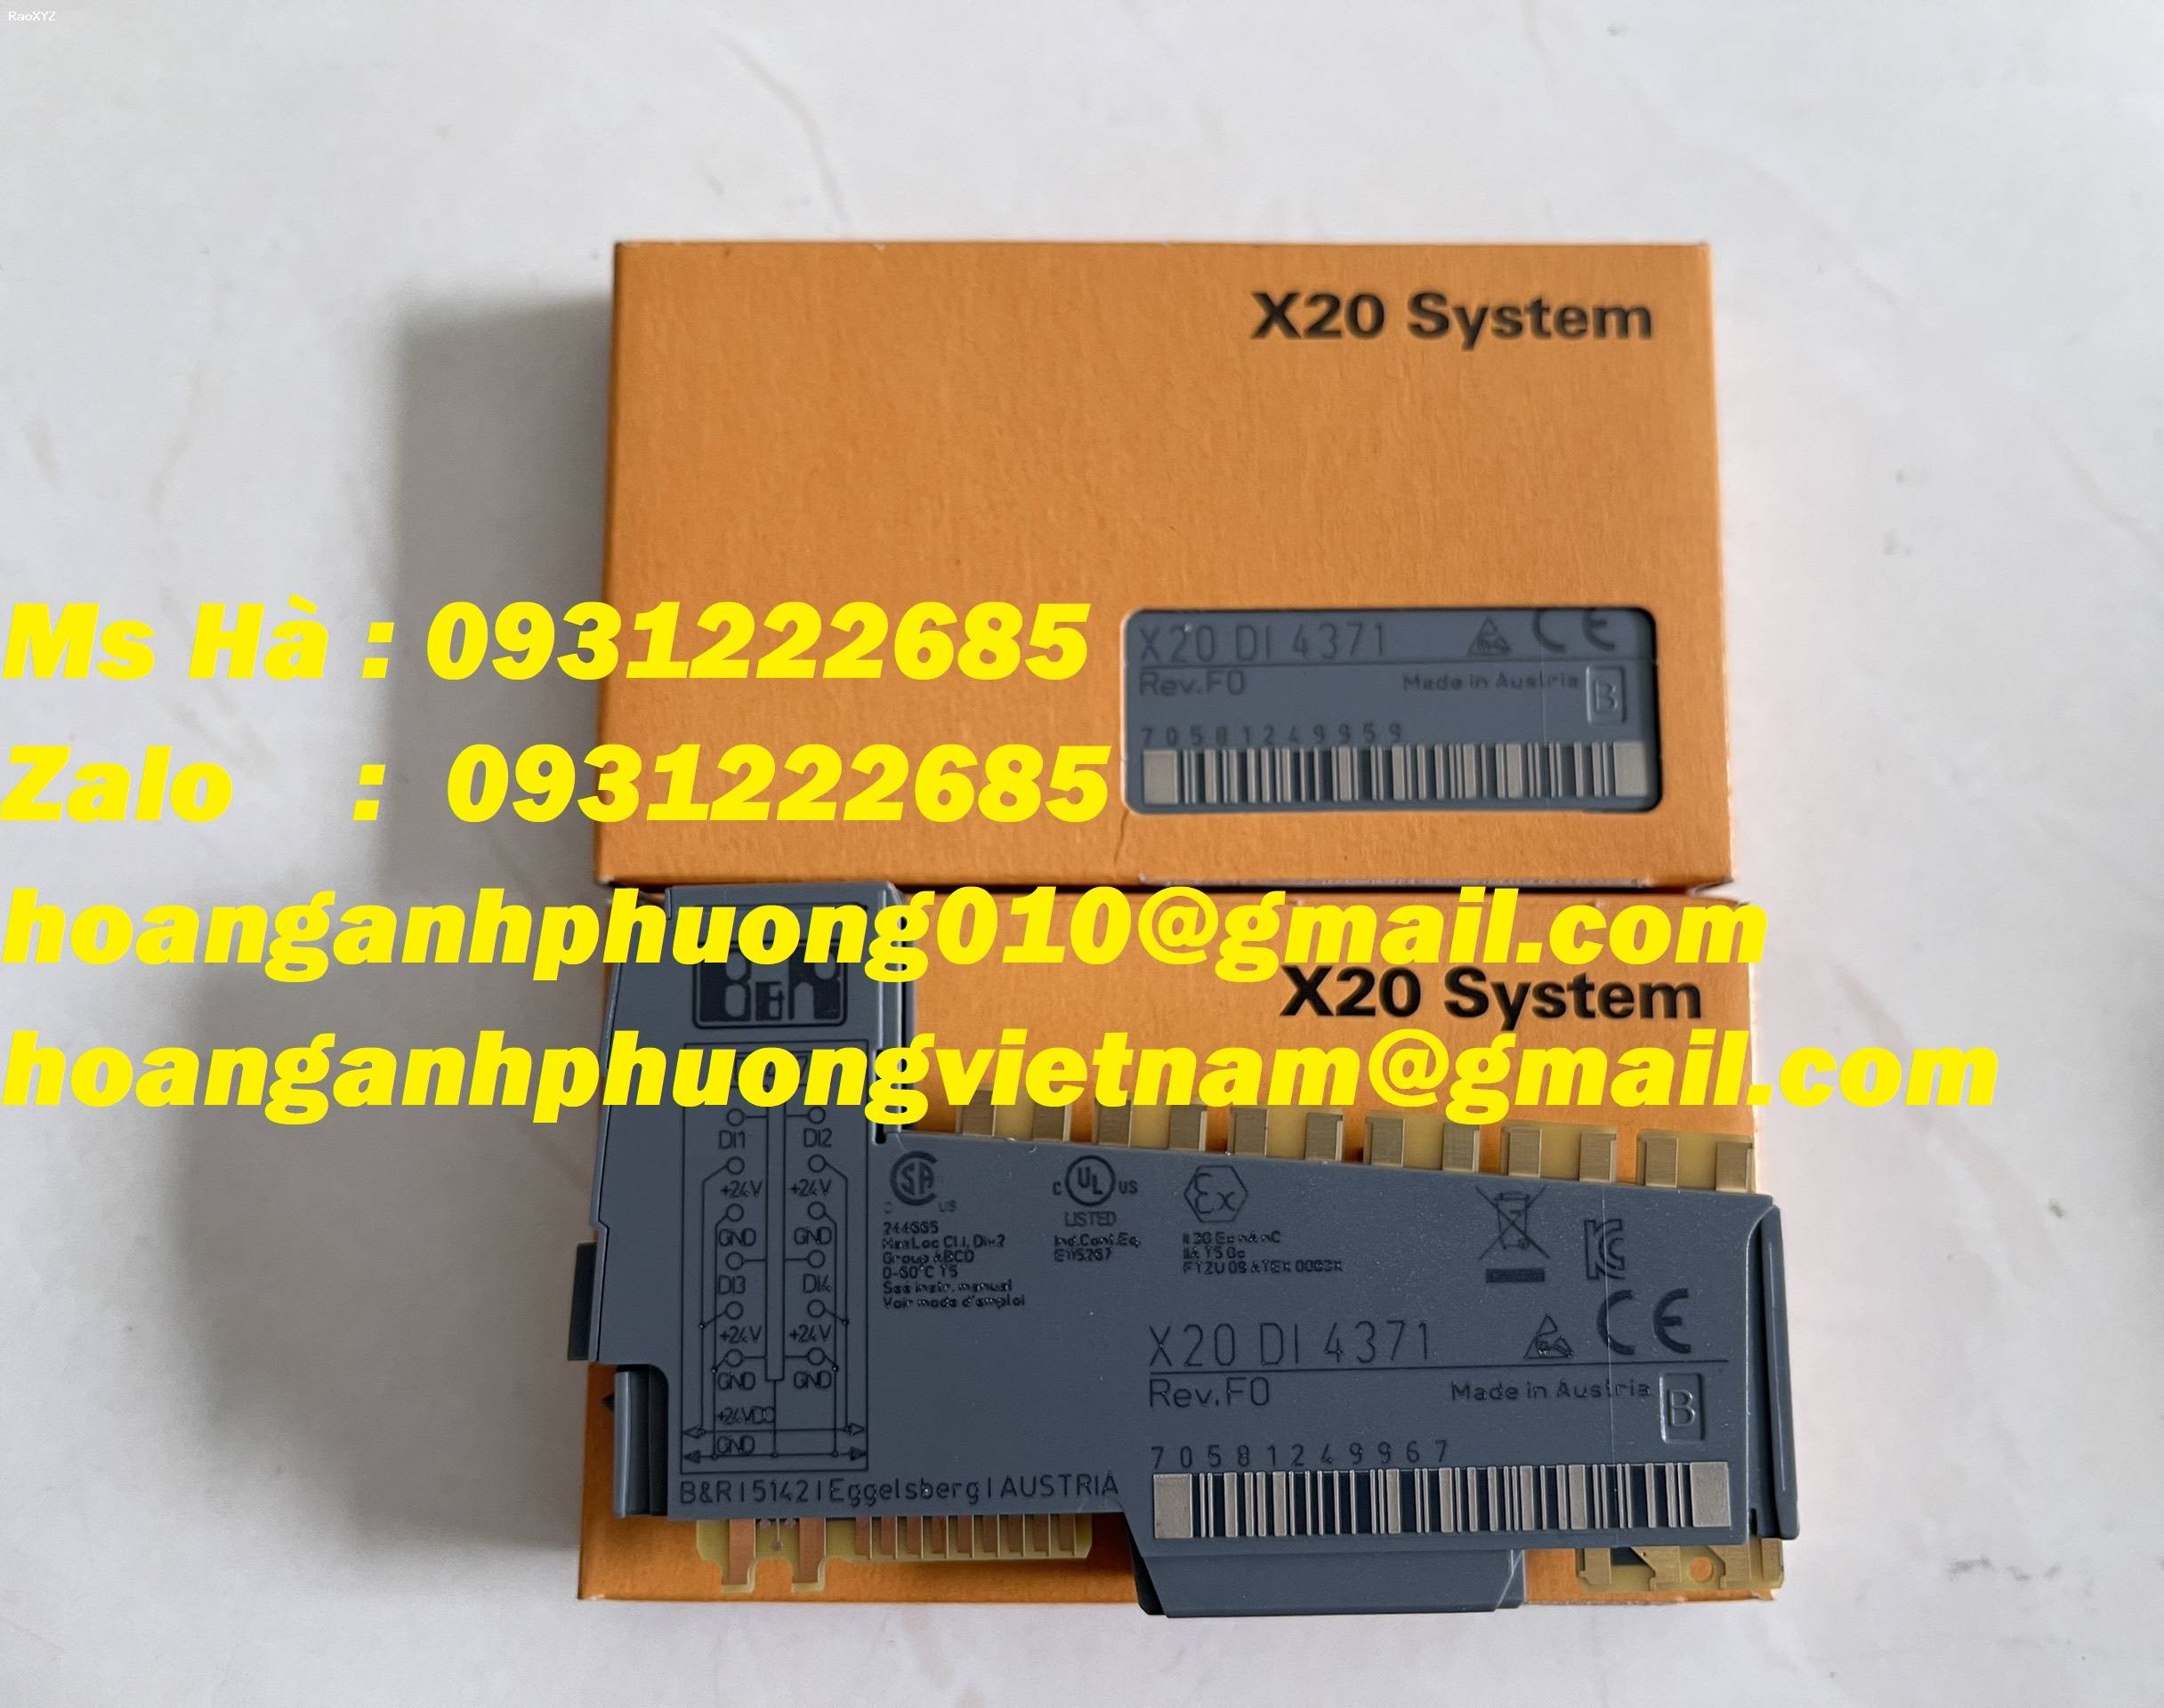 X20DI4371 module chính hiệu B&R - giá tốt giành cho khách hàng